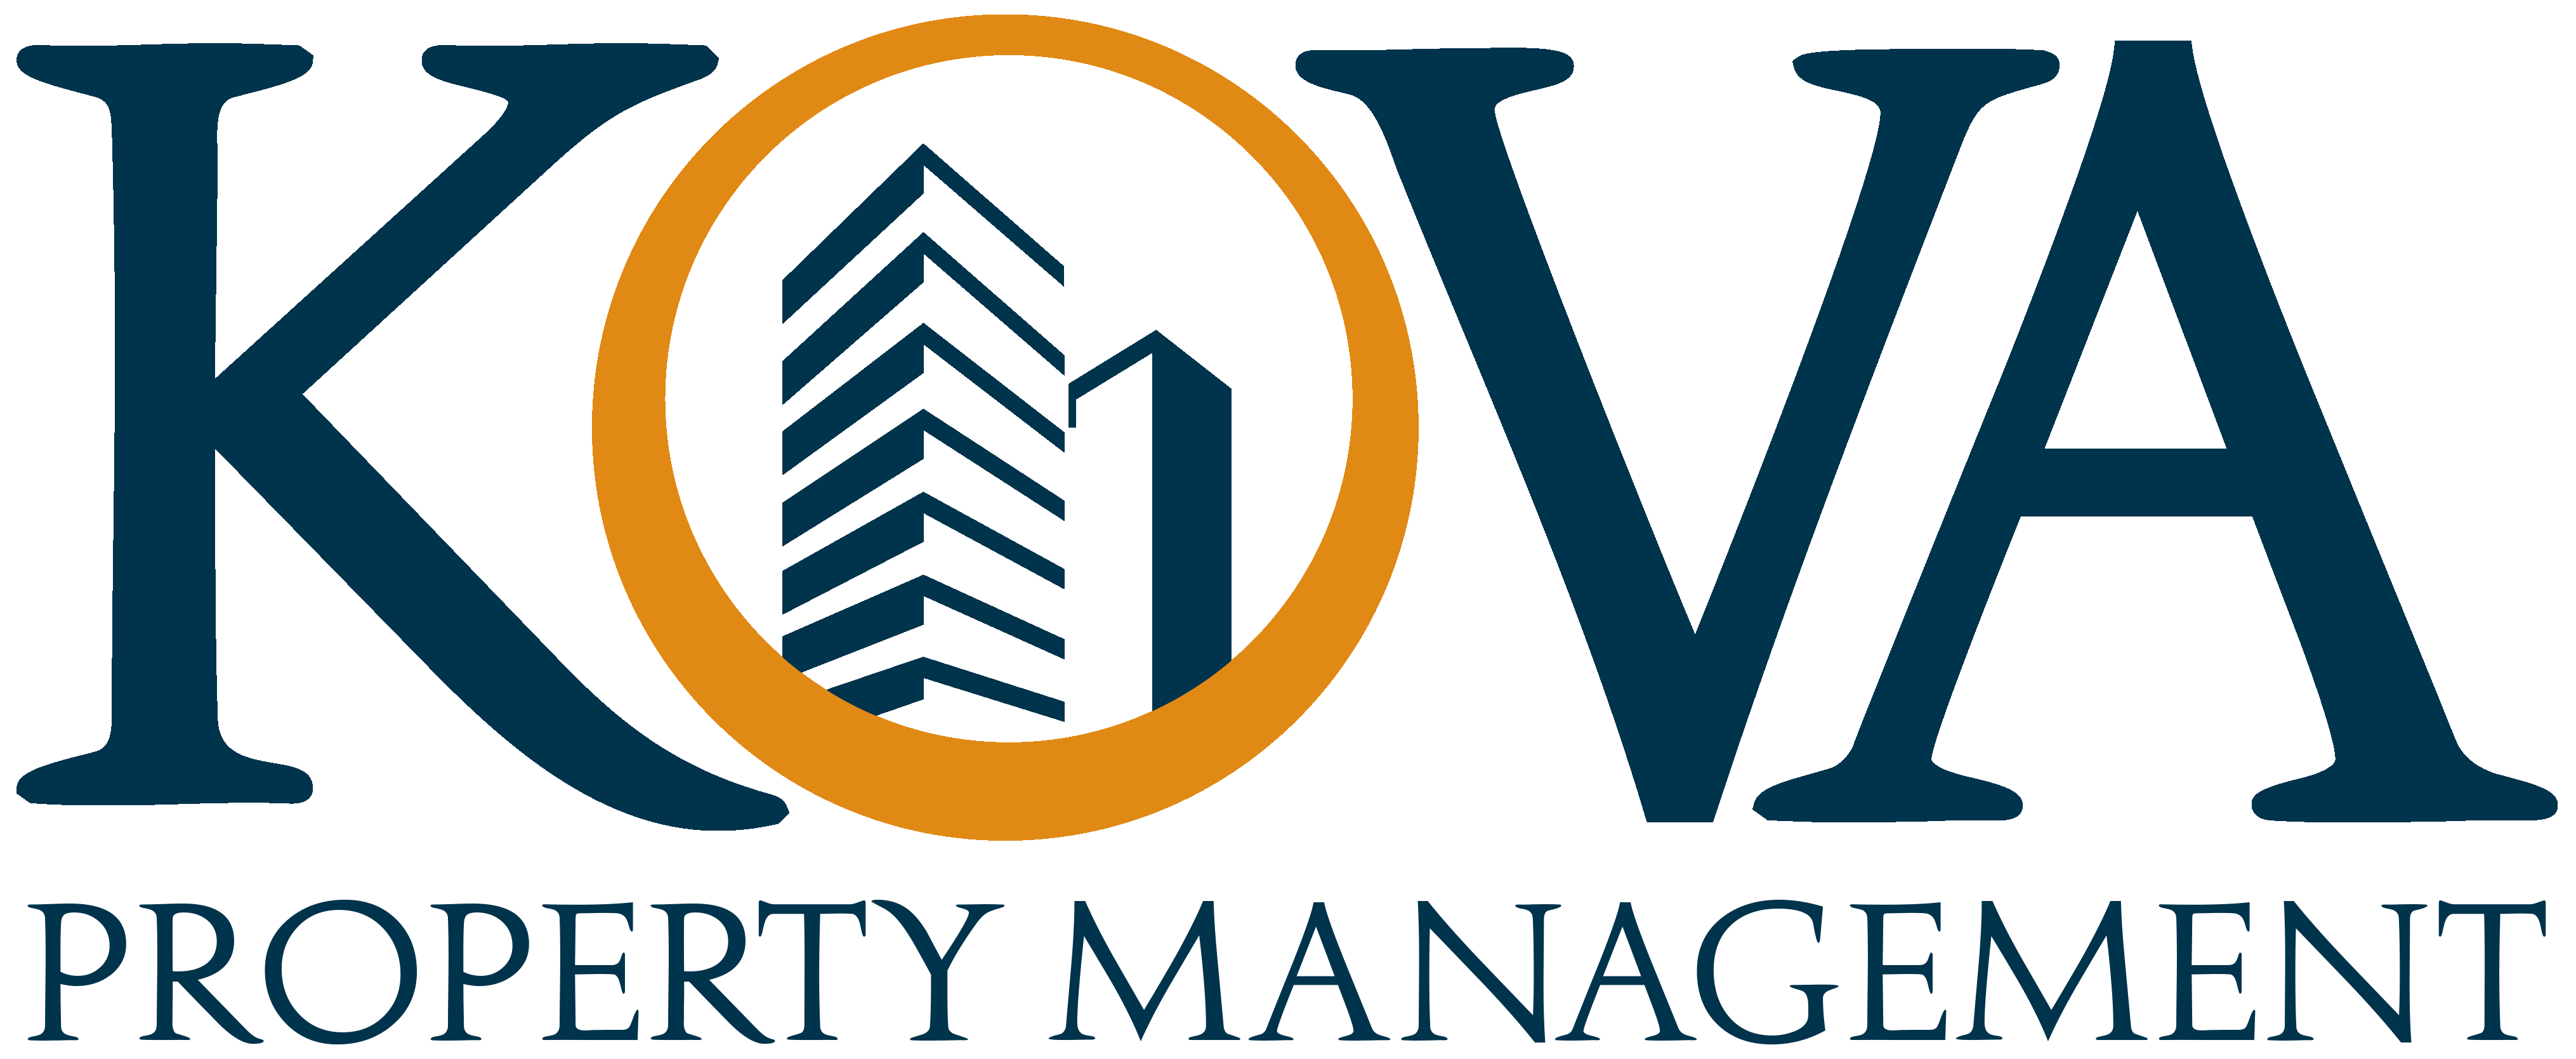 Logo KOVA Property Management